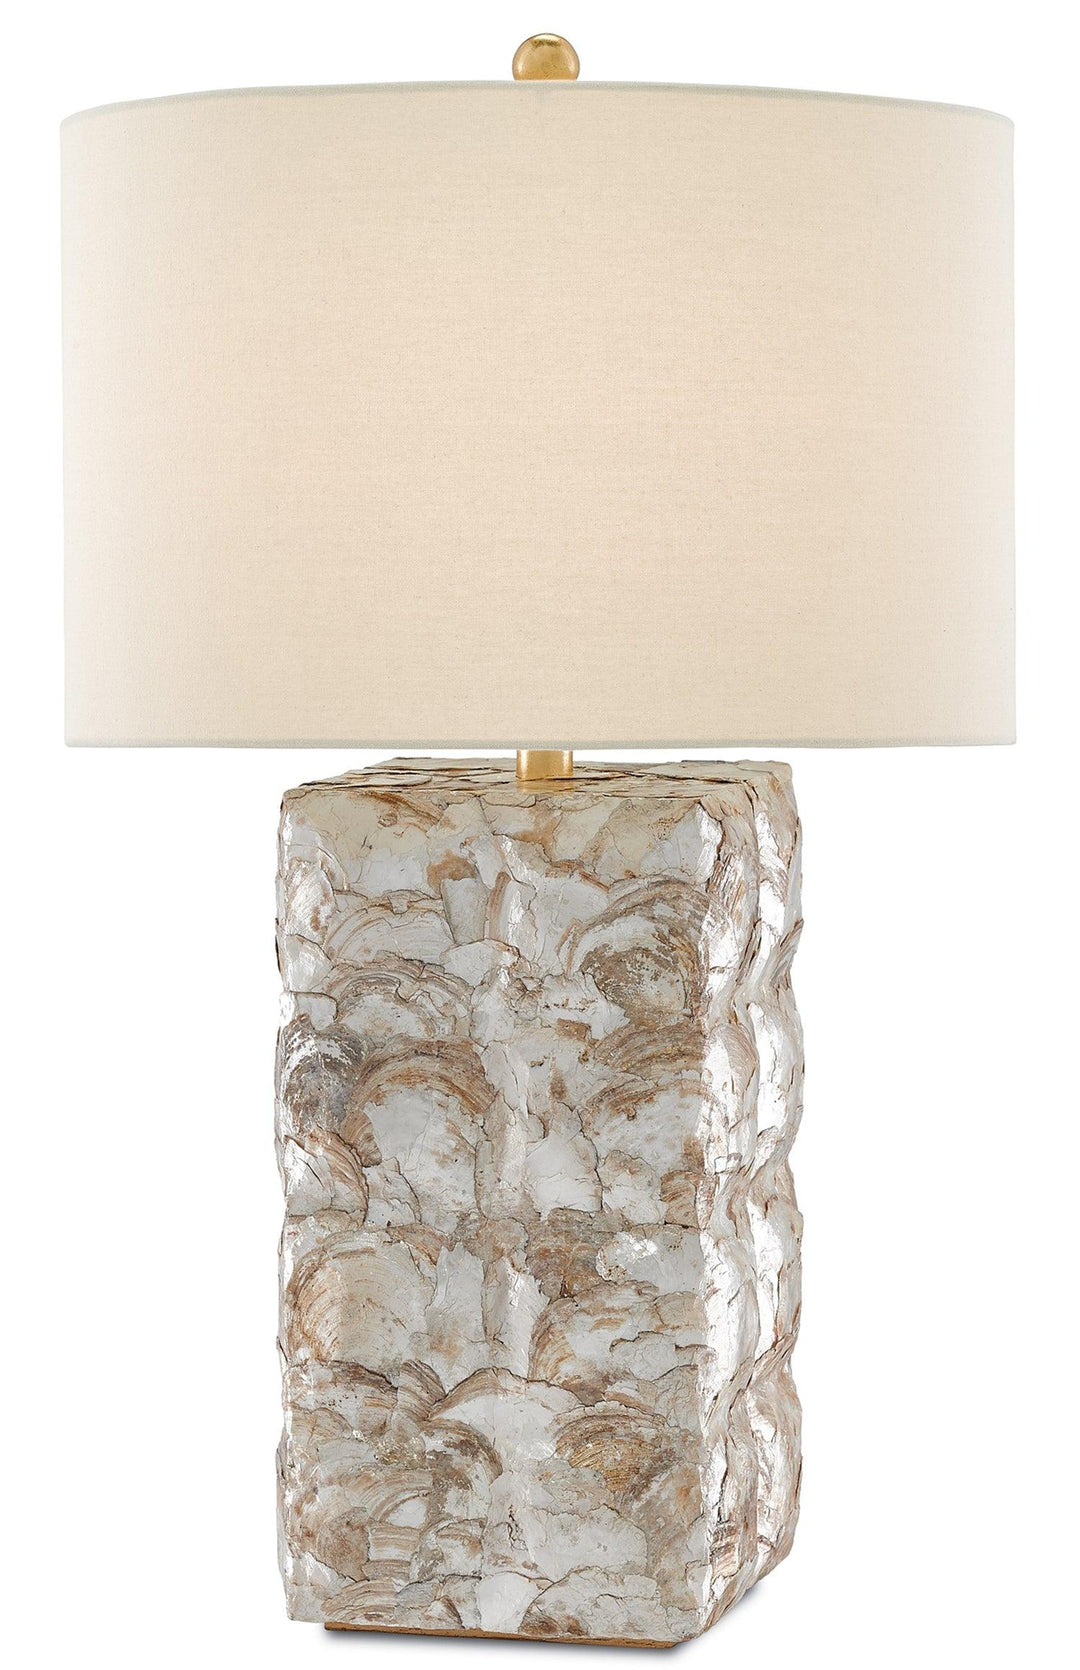 La Peregrina Table Lamp - Casey & Company